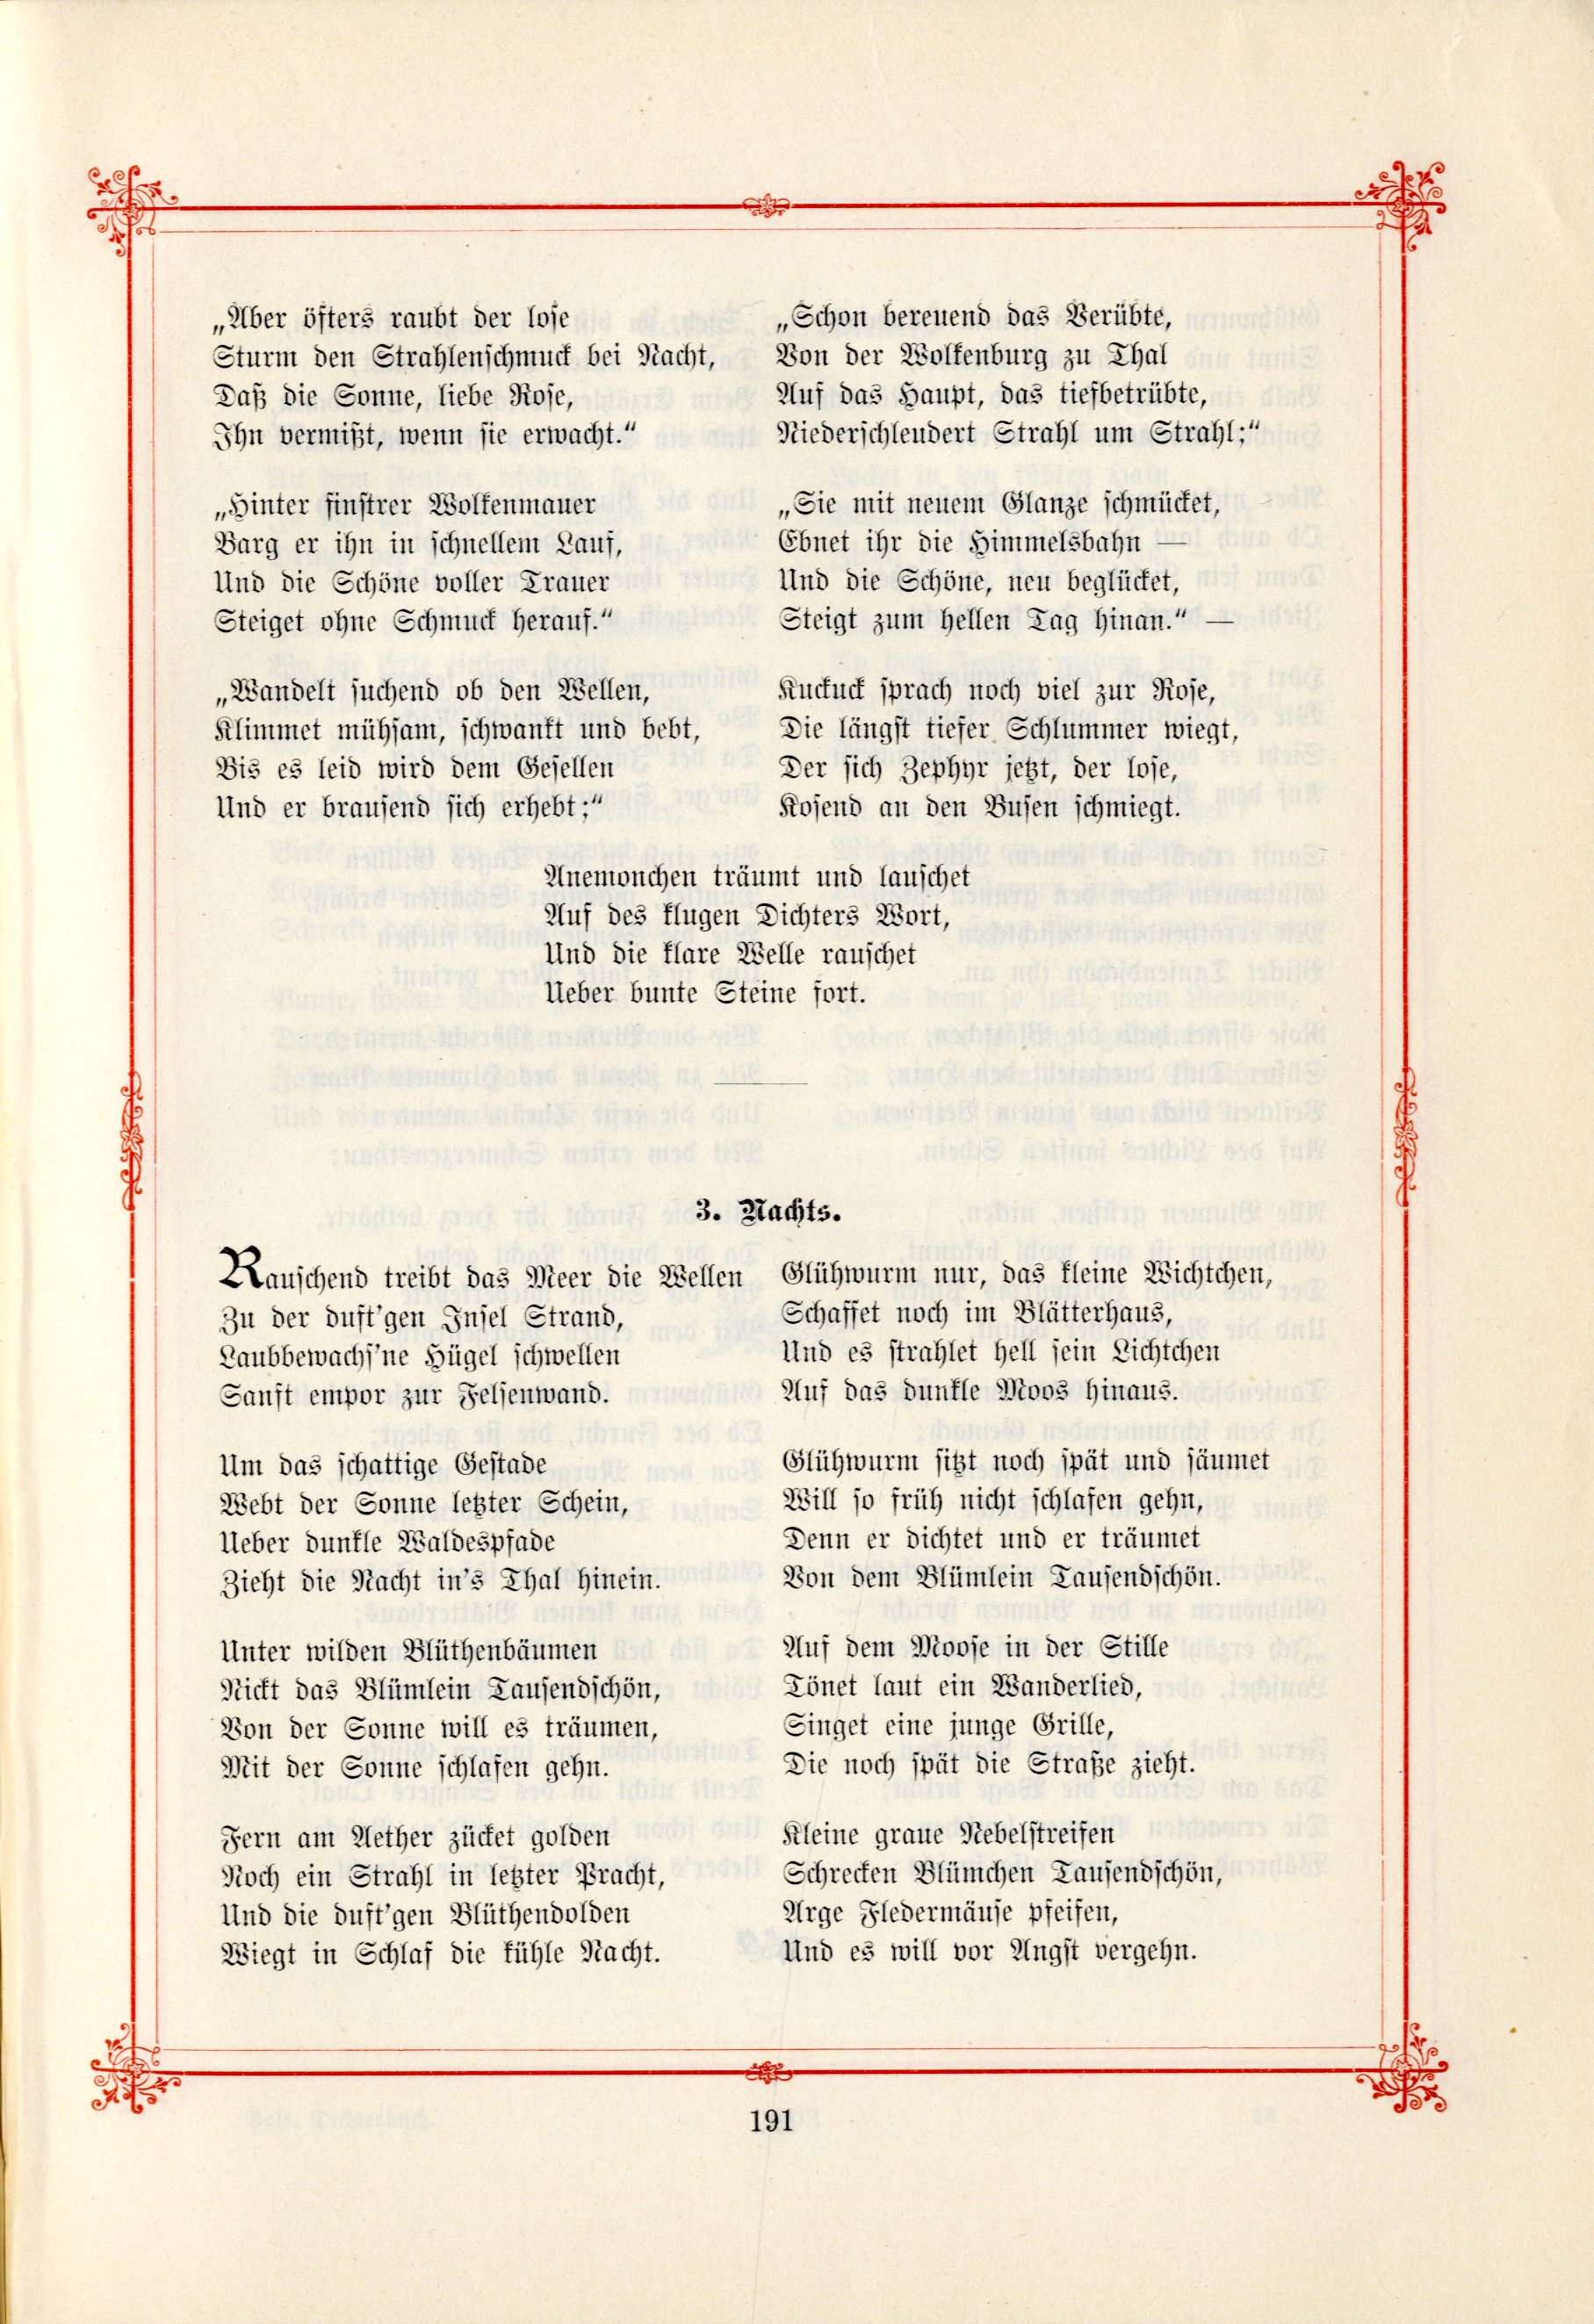 Nachts (1895) | 1. (191) Main body of text